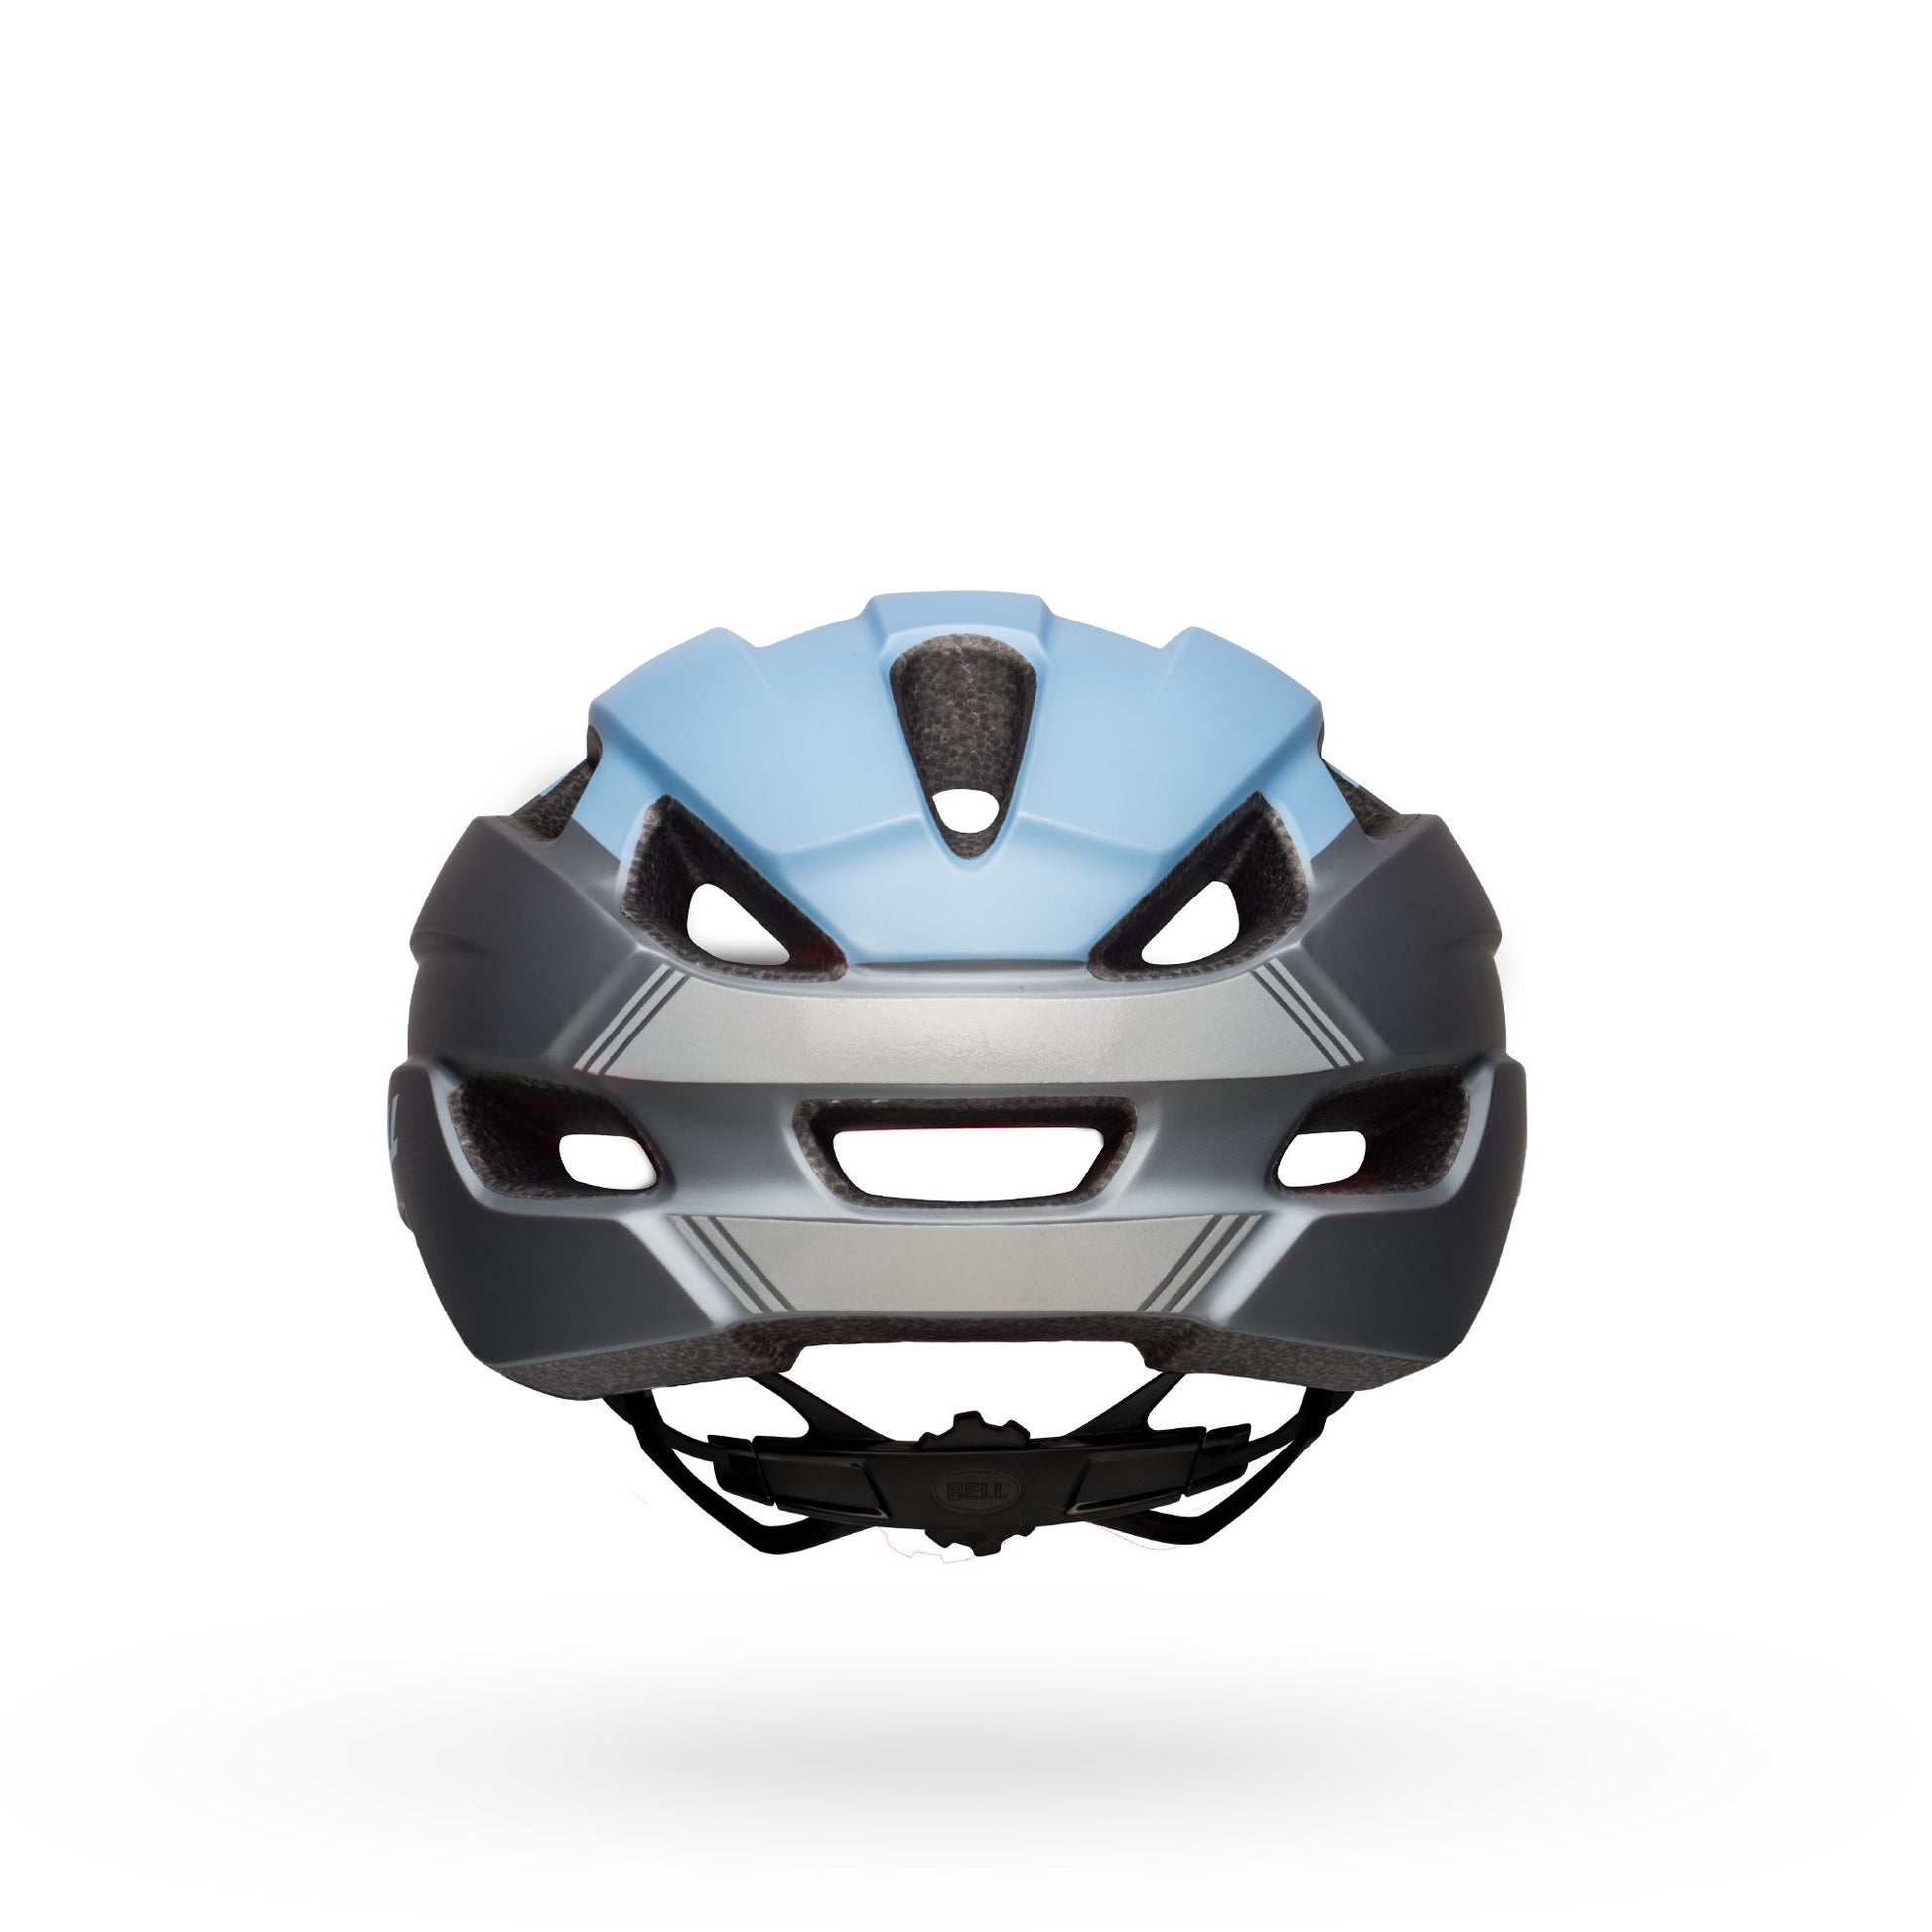 Bell Trace Helmet Matte Blue M\L Bike Helmets